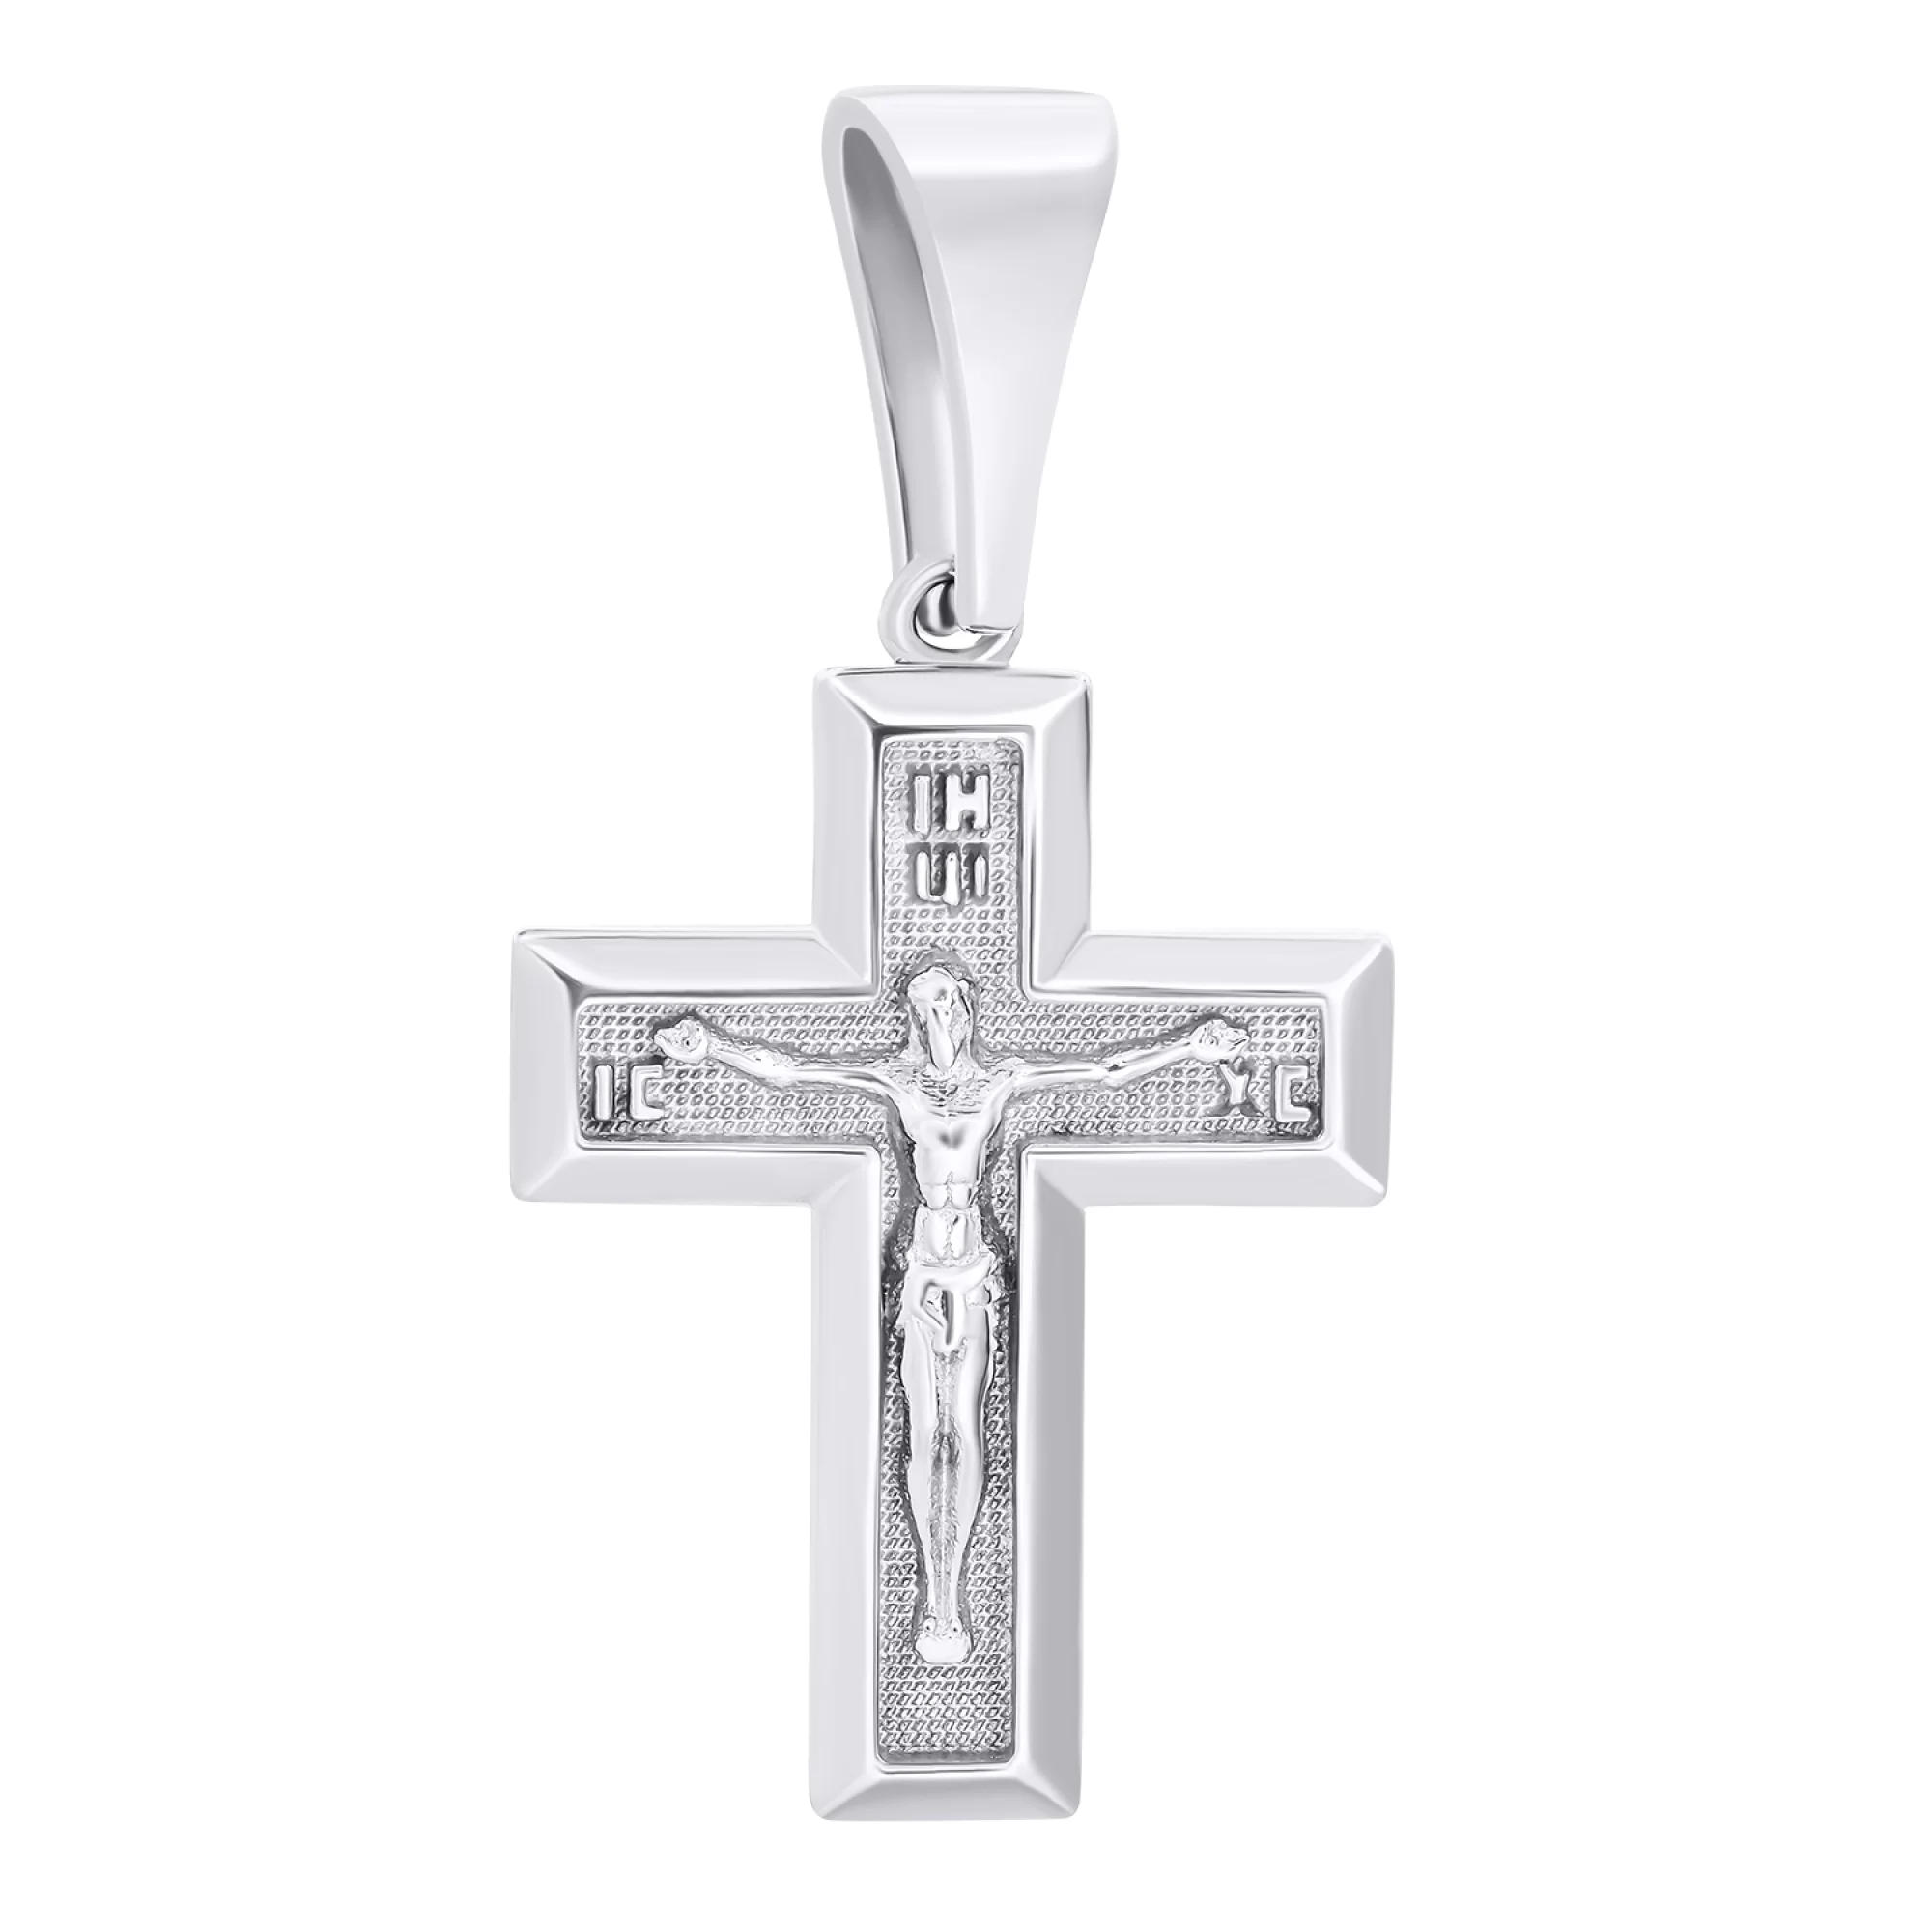 Православный крест из серебра - 1546690 – изображение 1